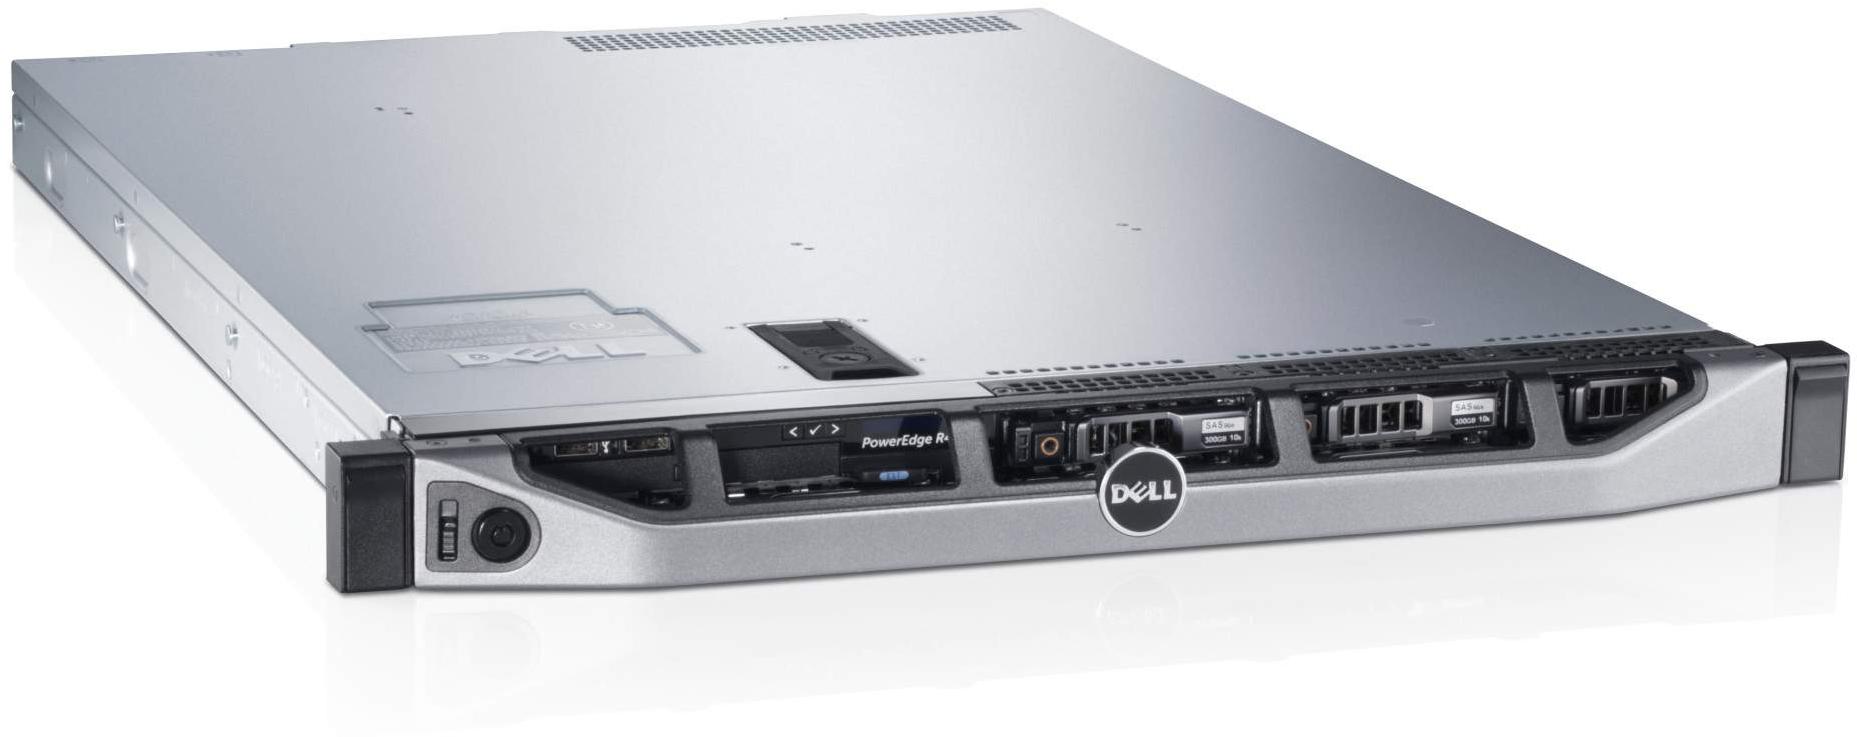    Dell PowerEdge R420 210-39988/086  #1